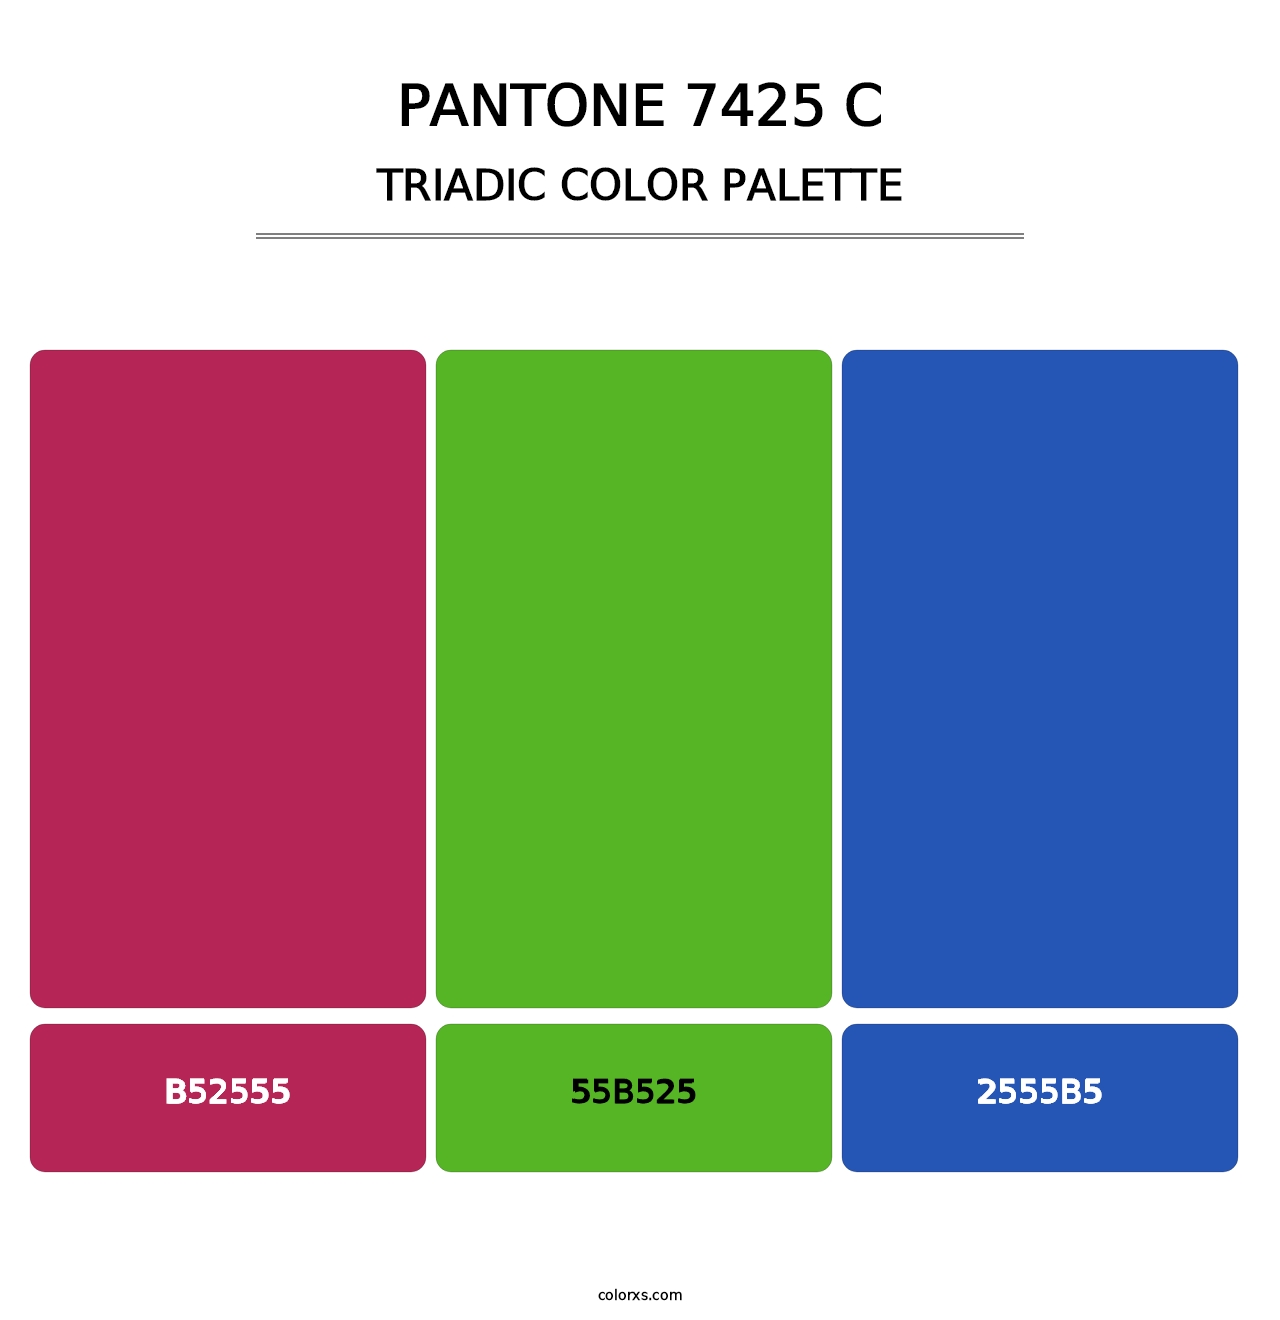 PANTONE 7425 C - Triadic Color Palette